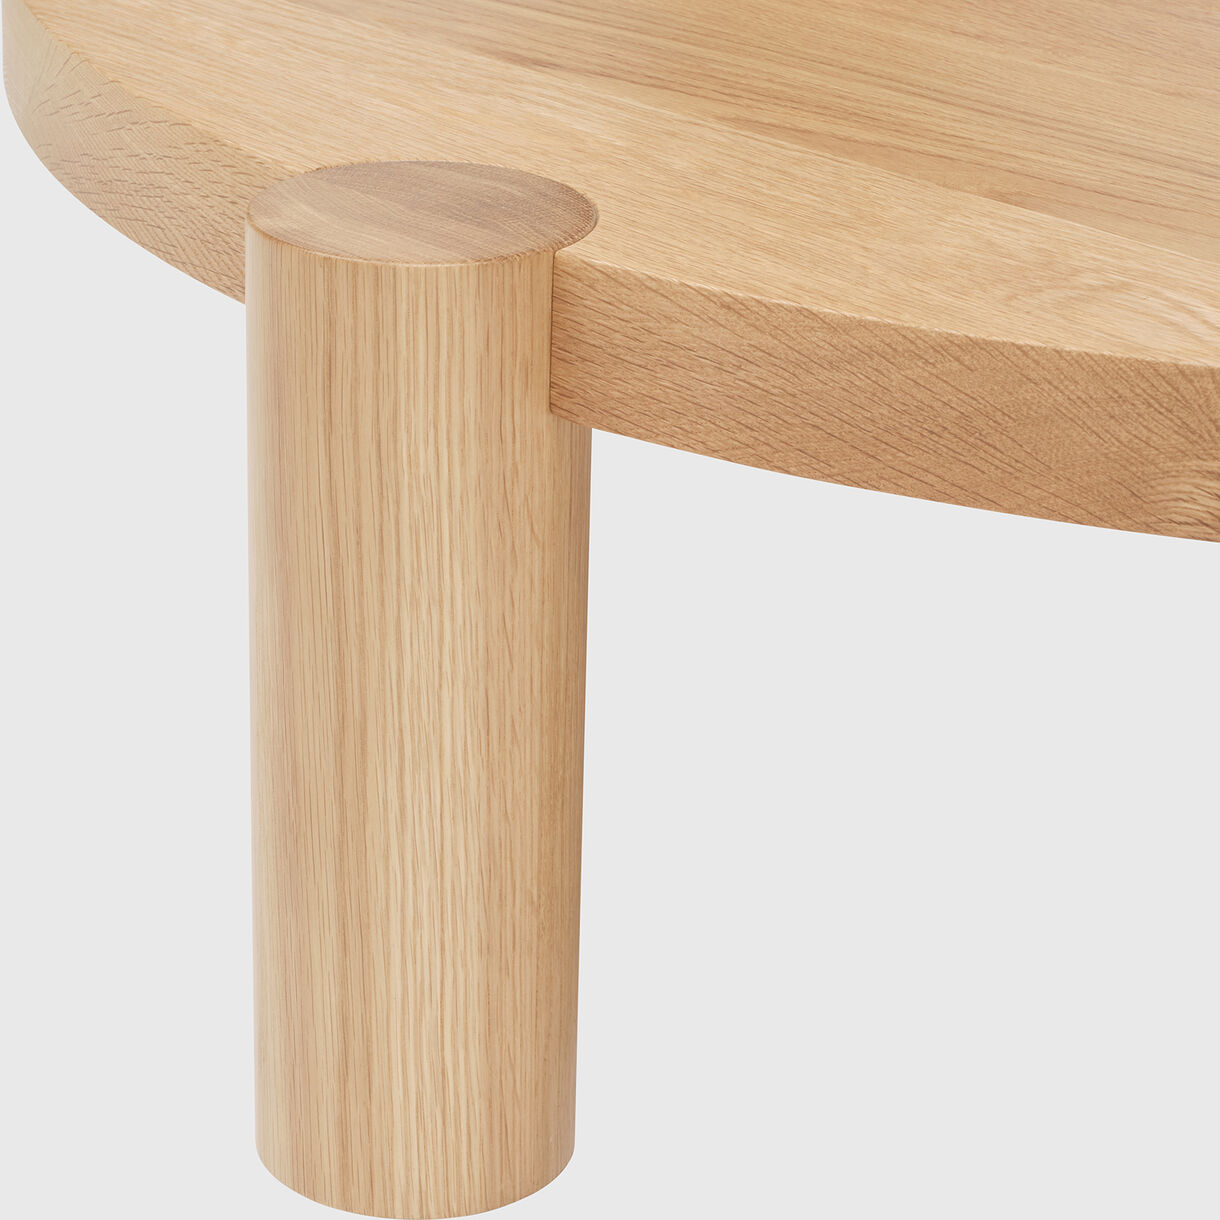 Breadstick Coffee Table, Round, Oak